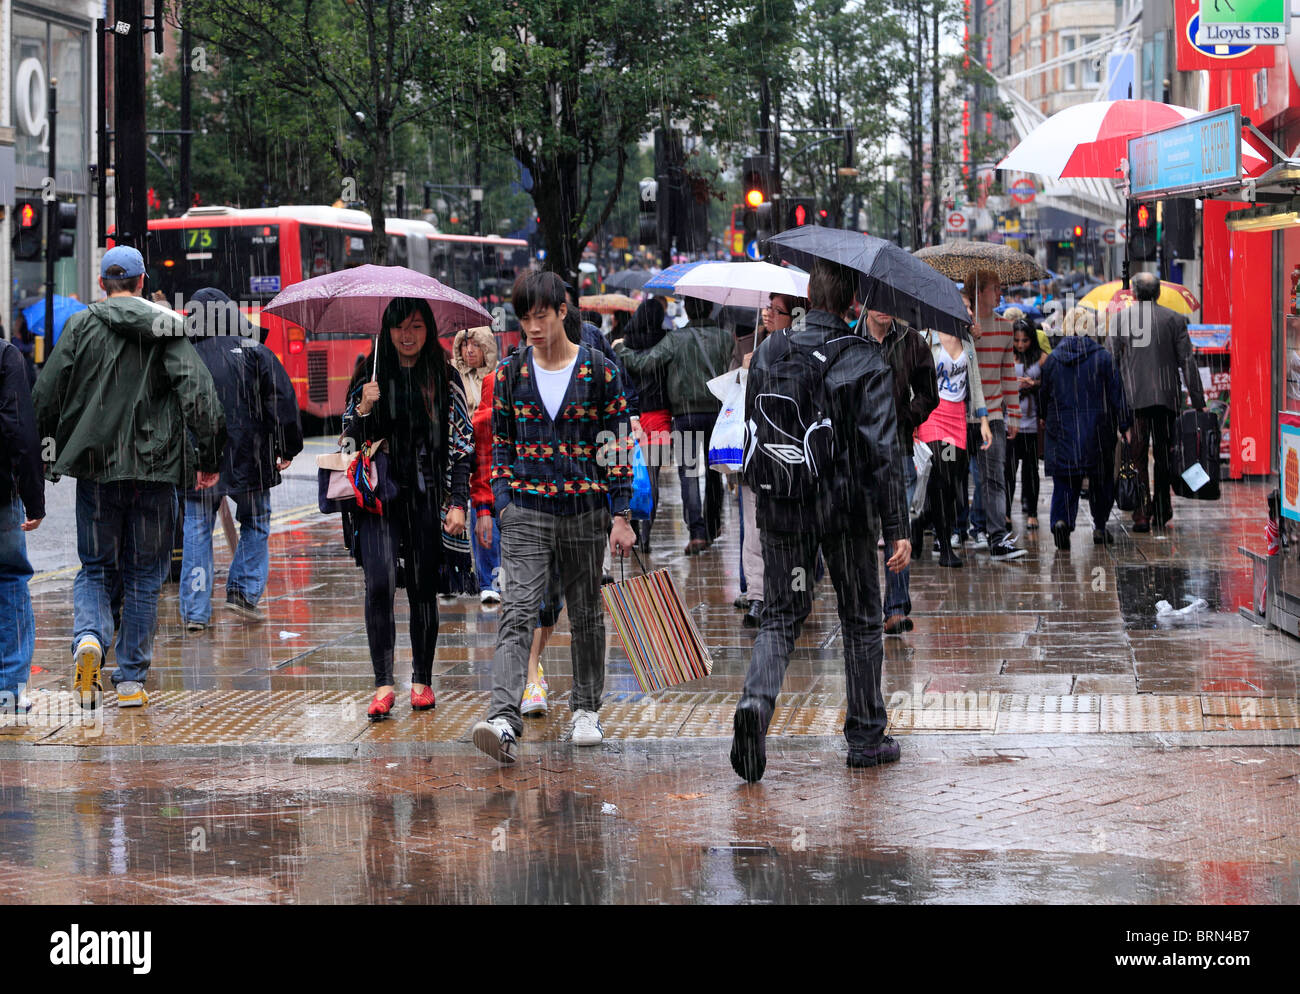 Einkaufen an einem kalten und regnerischen Tag. Stockfoto